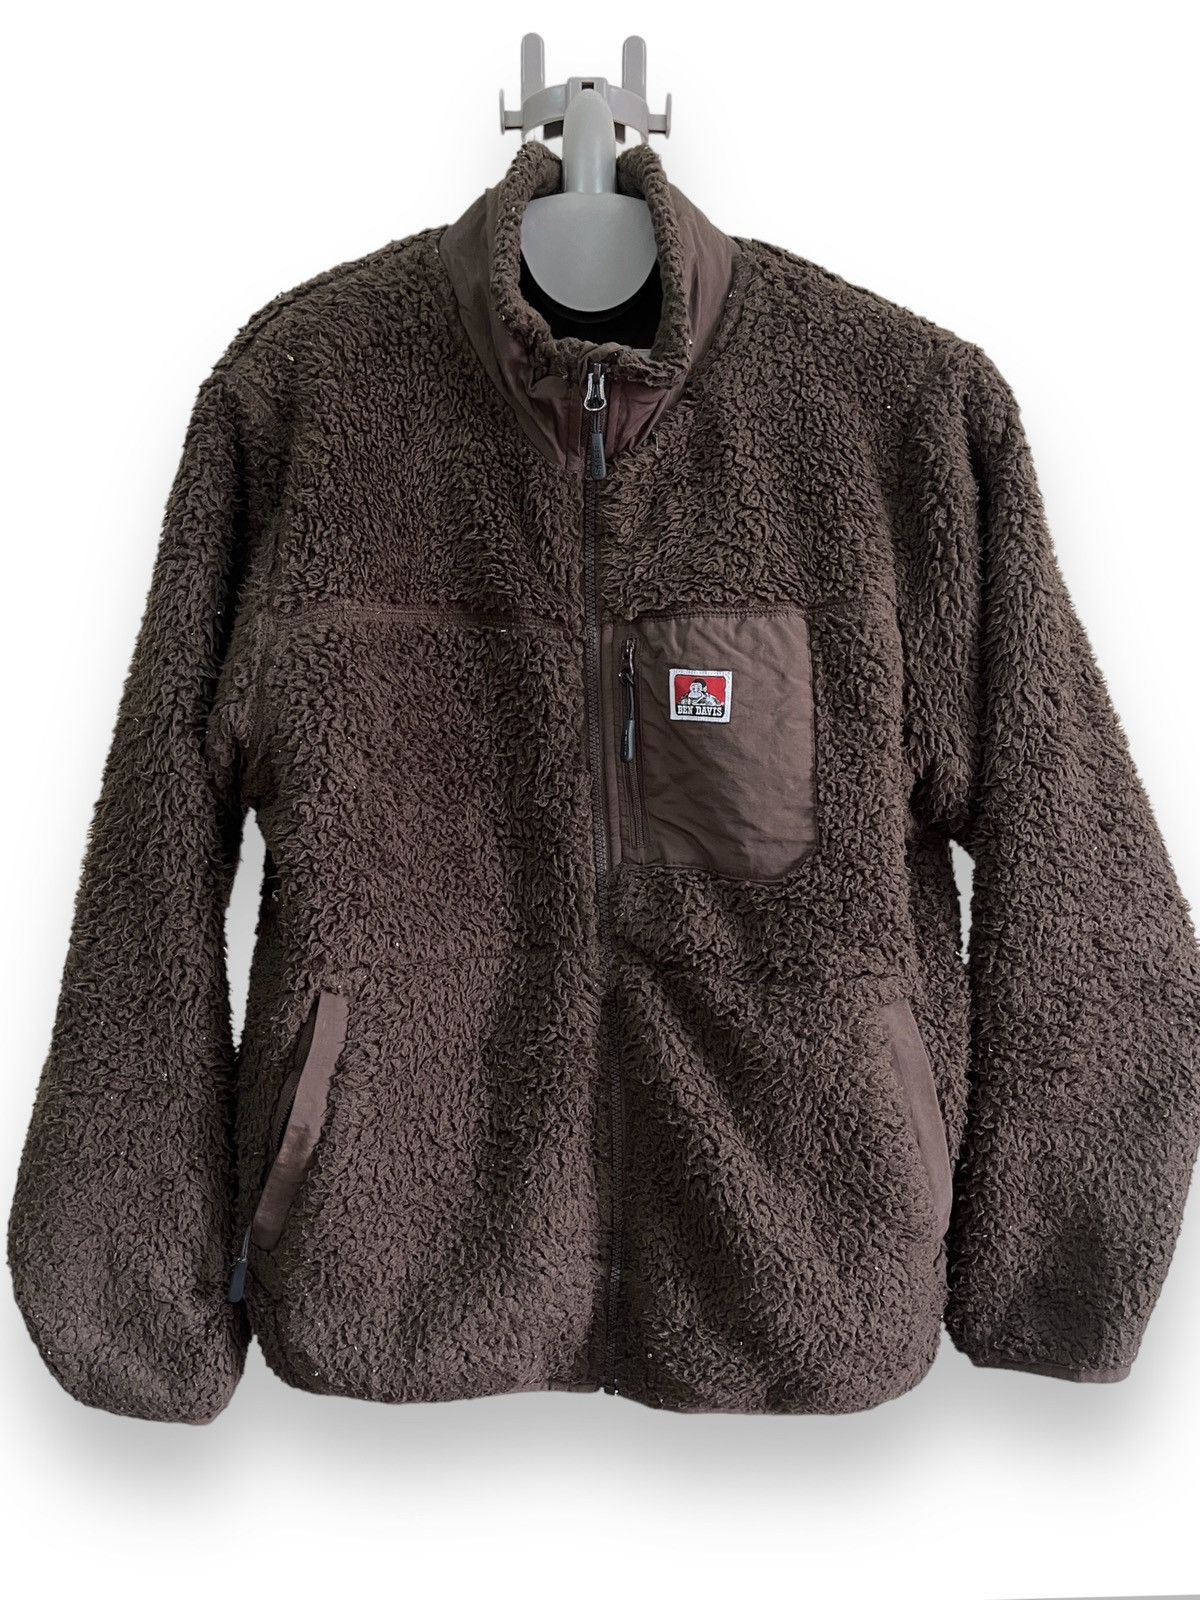 Ben Davis - Vintage Ben Davies Fleece Sweatshirt - 1